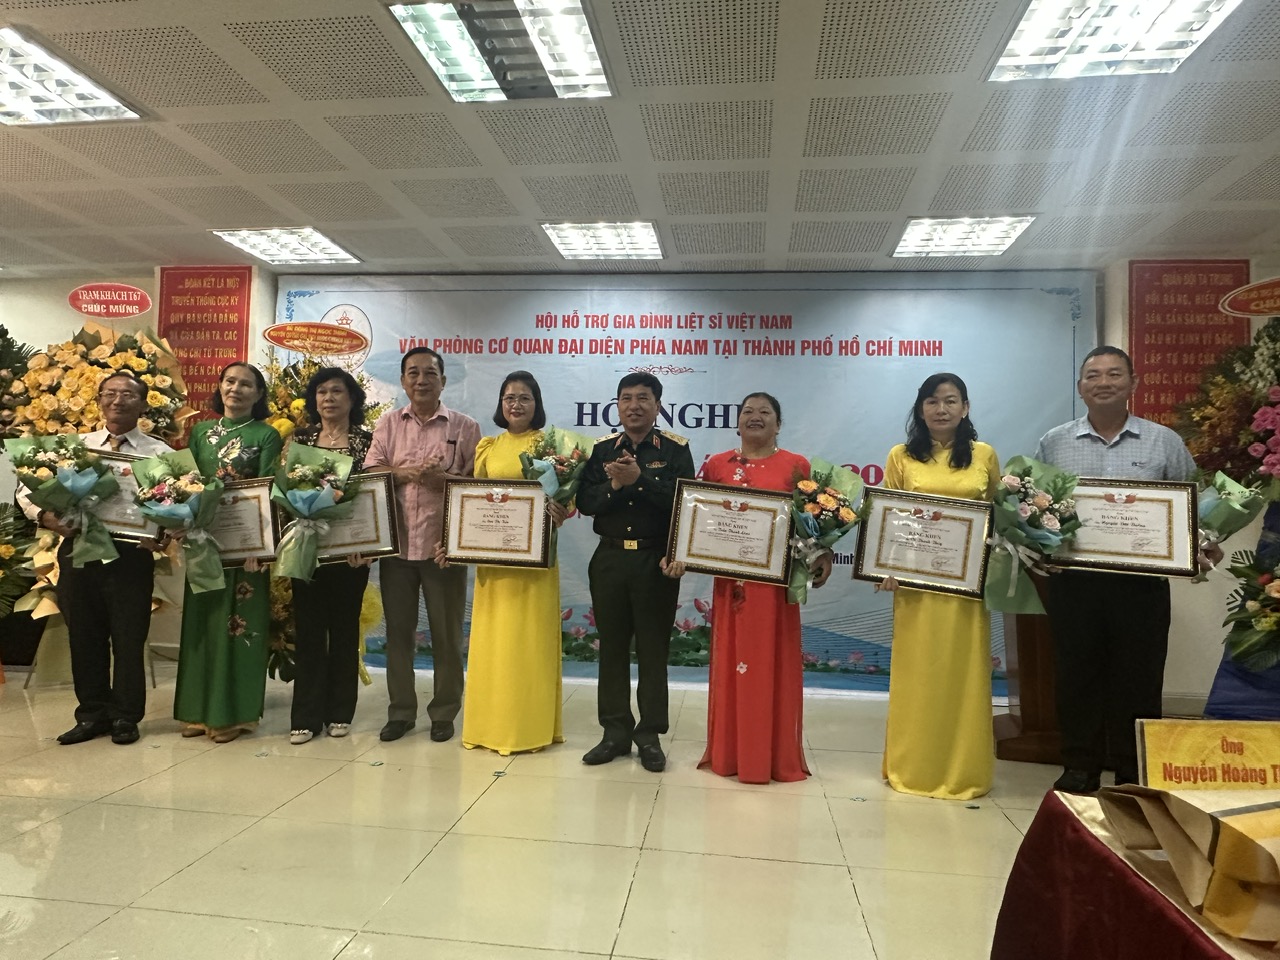 Các cá nhân nhận bằng khen của Hội HTGĐLS Việt Nam